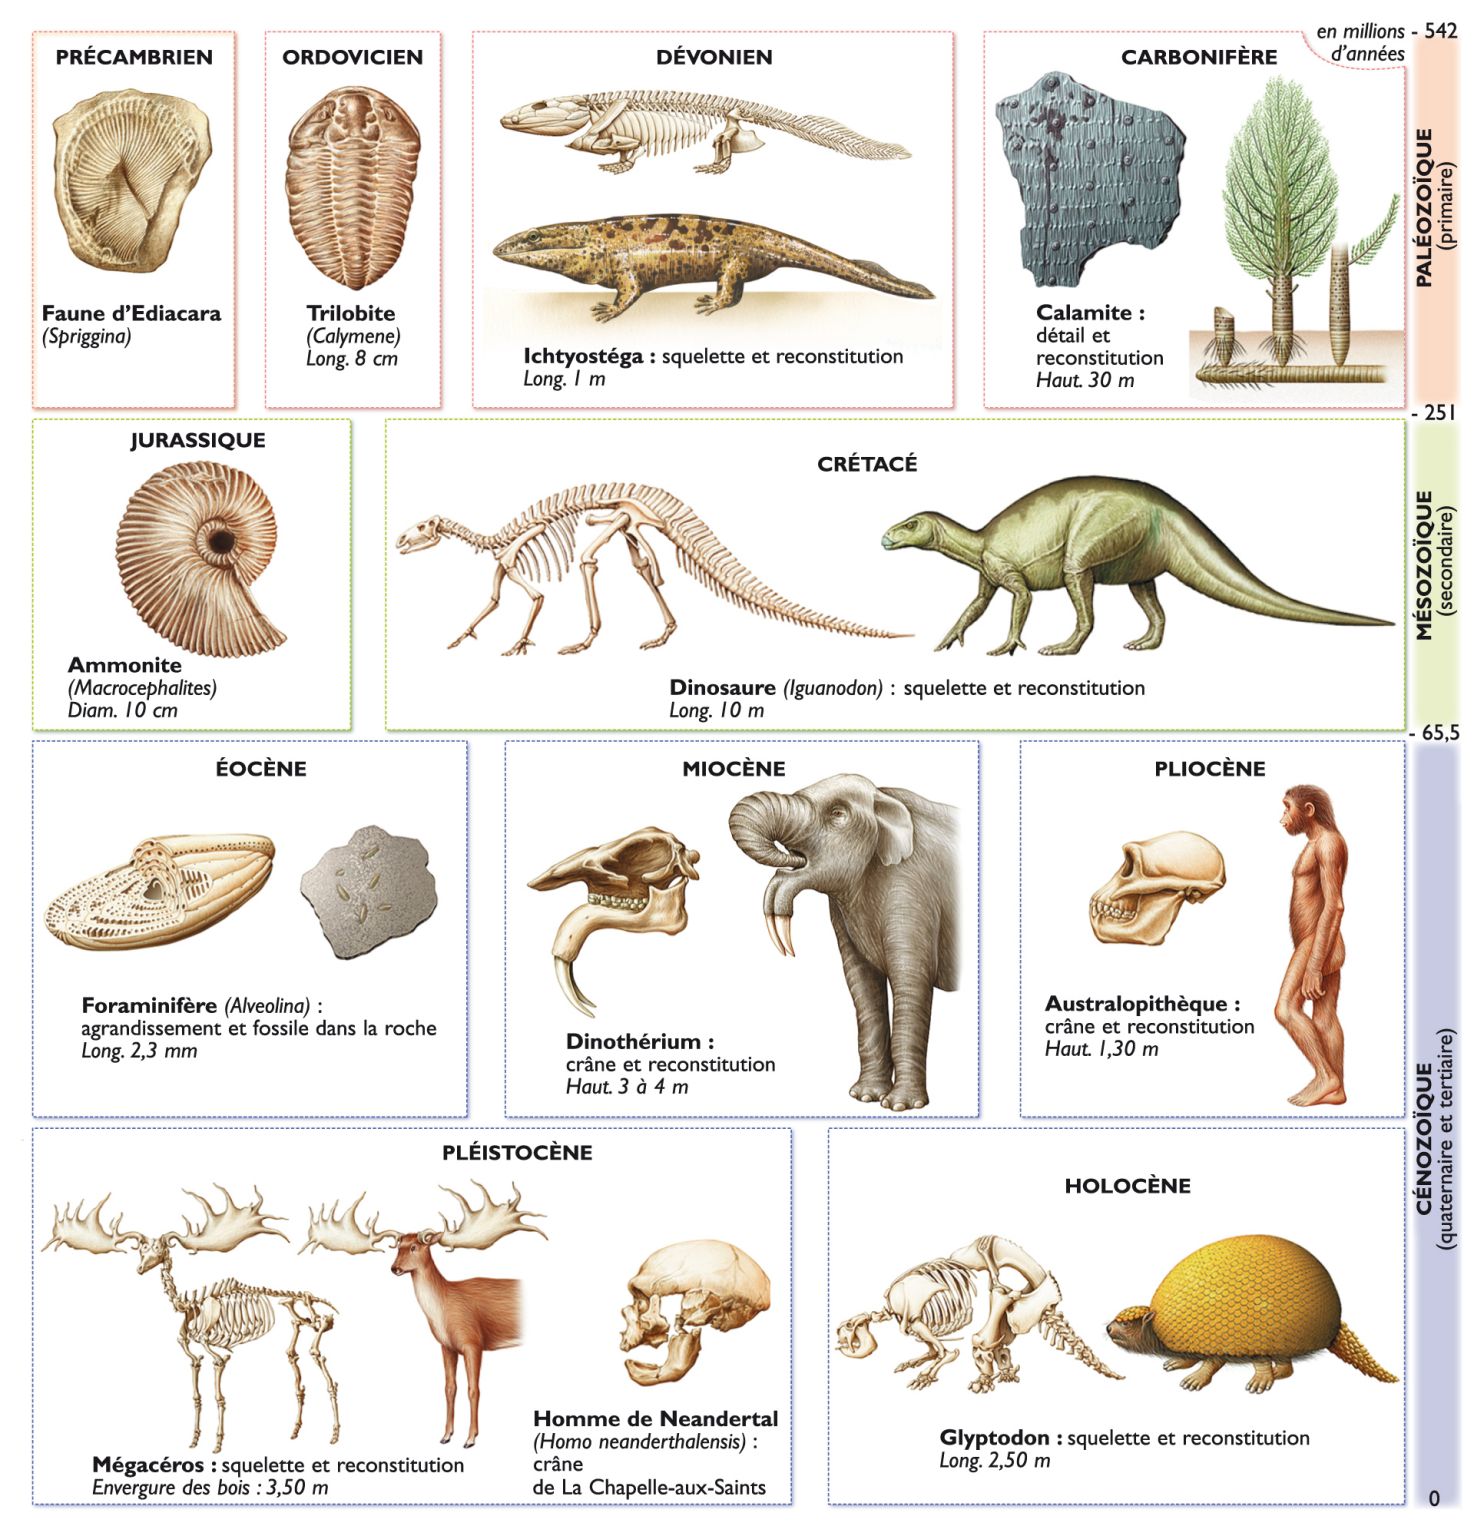 paléontologie : squelettes ou fossiles d’êtres vivants ayant peuplé la Terre à différentes époques géologiques